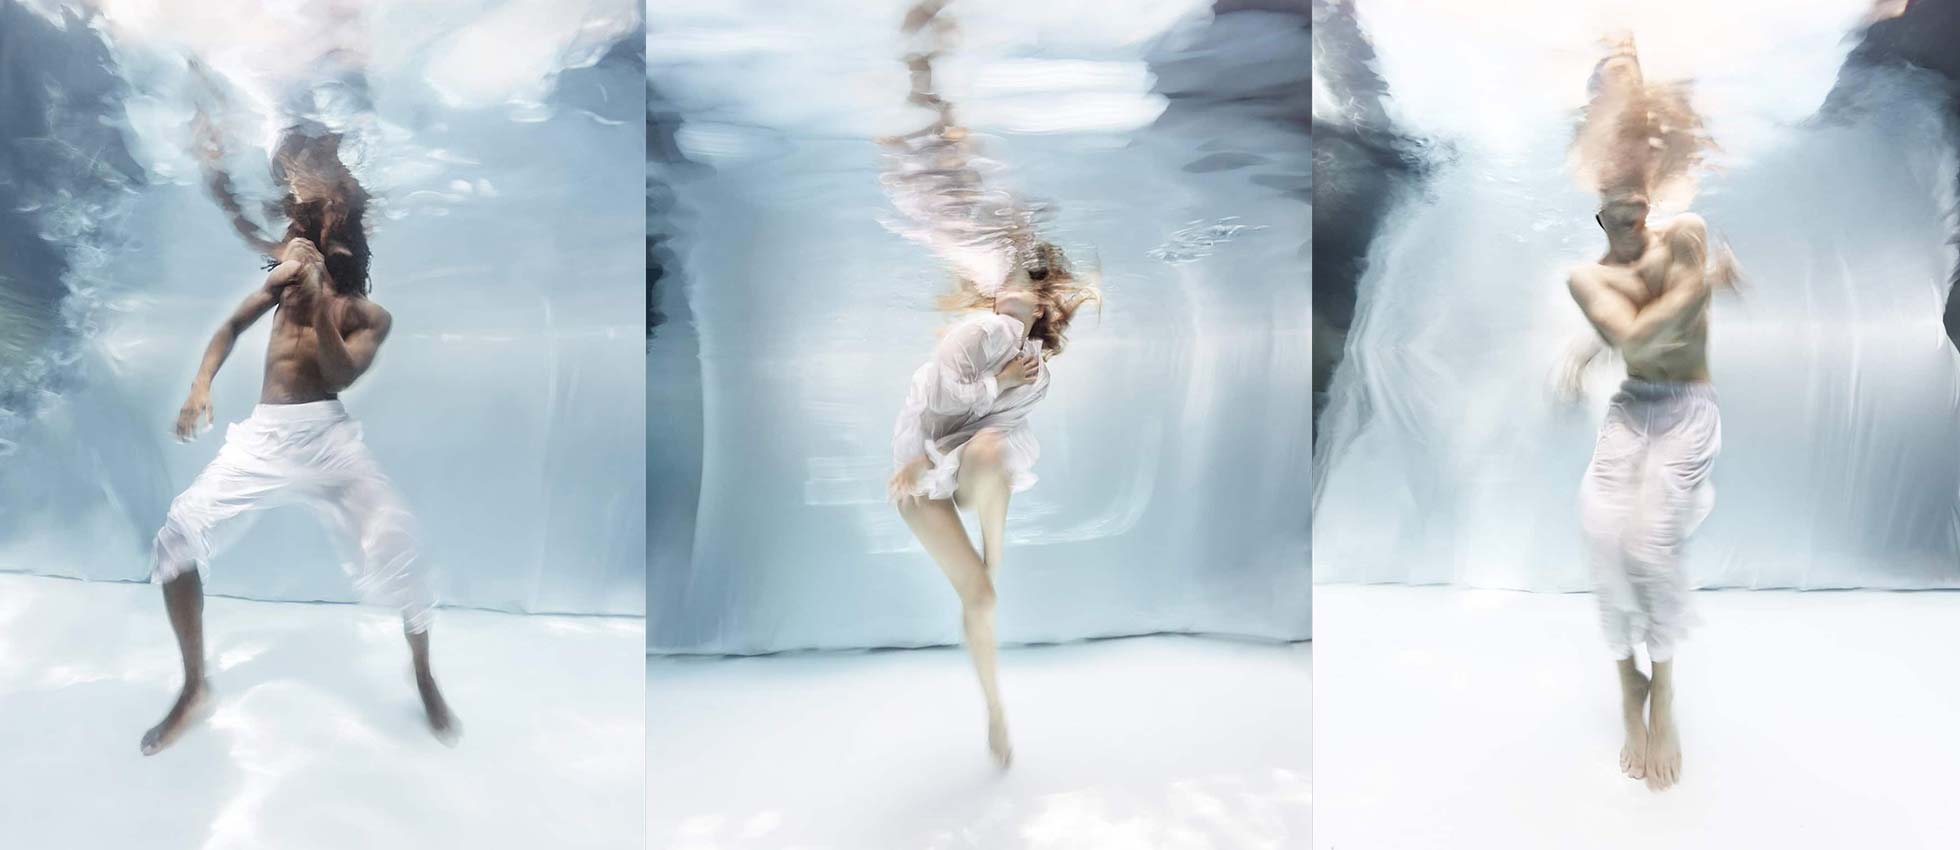 Estas fotos submarinas muestran cuerpos ingrávidos congelados en movimiento